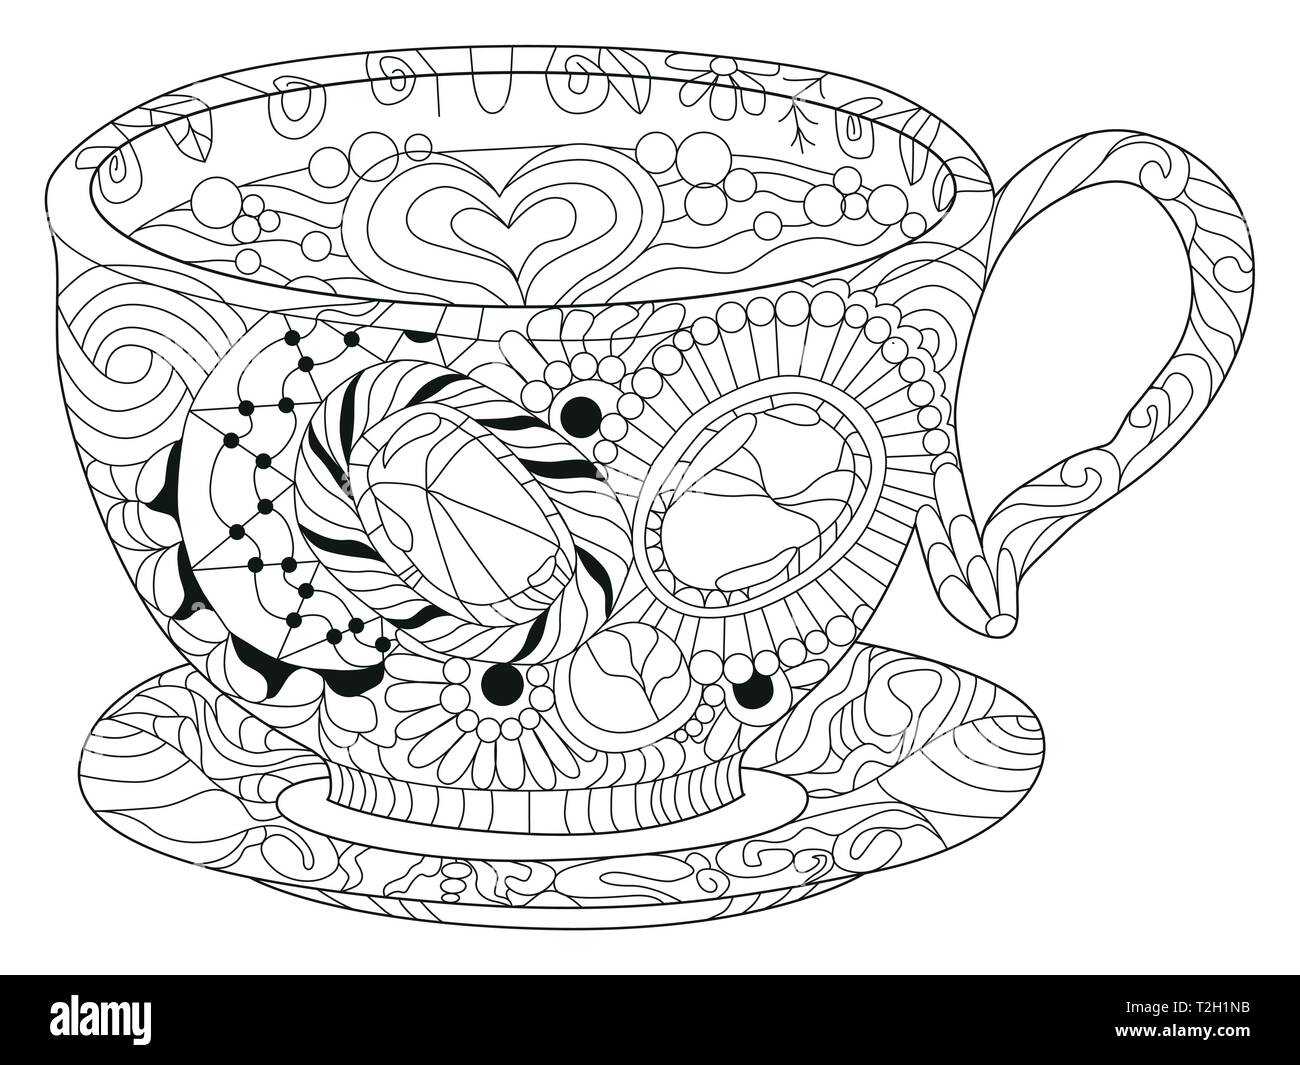 Vektor Kaffee oder Tee Tasse mit abstrakten Ornamenten. Hand gezeichnete Illustration für Malbuch für Erwachsene in der zentangle, doodle Stil. Malvorlagen. Stock Vektor